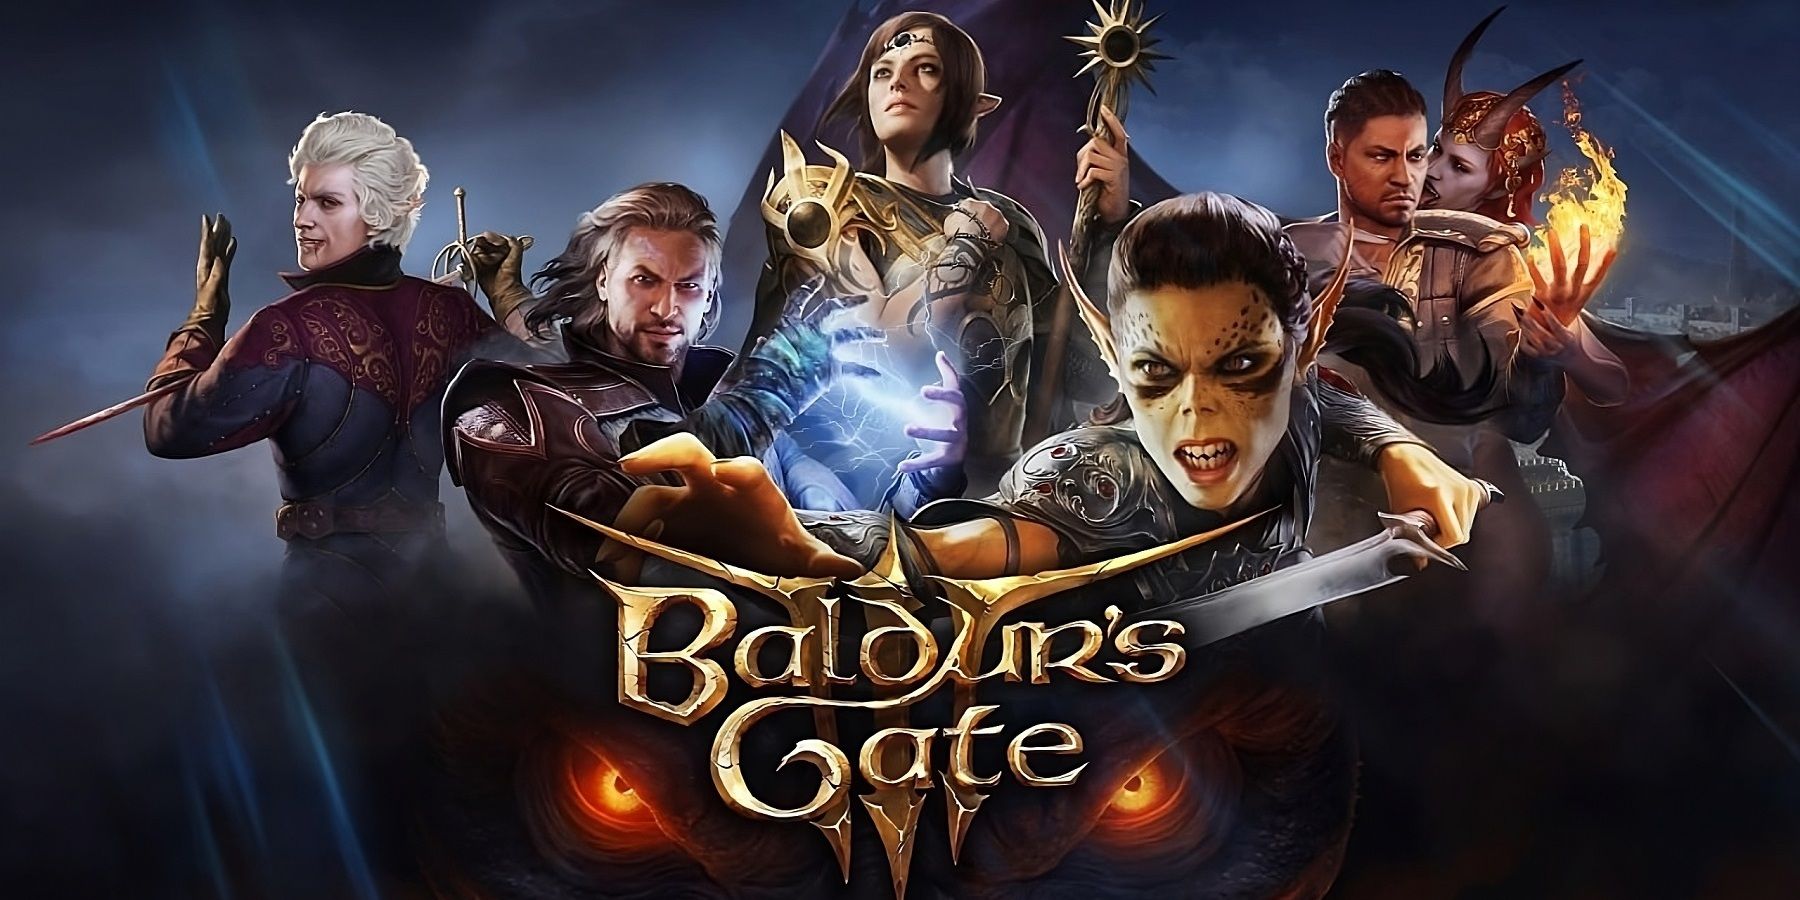 Baldurs-gate-3-174-hours-cutscenes